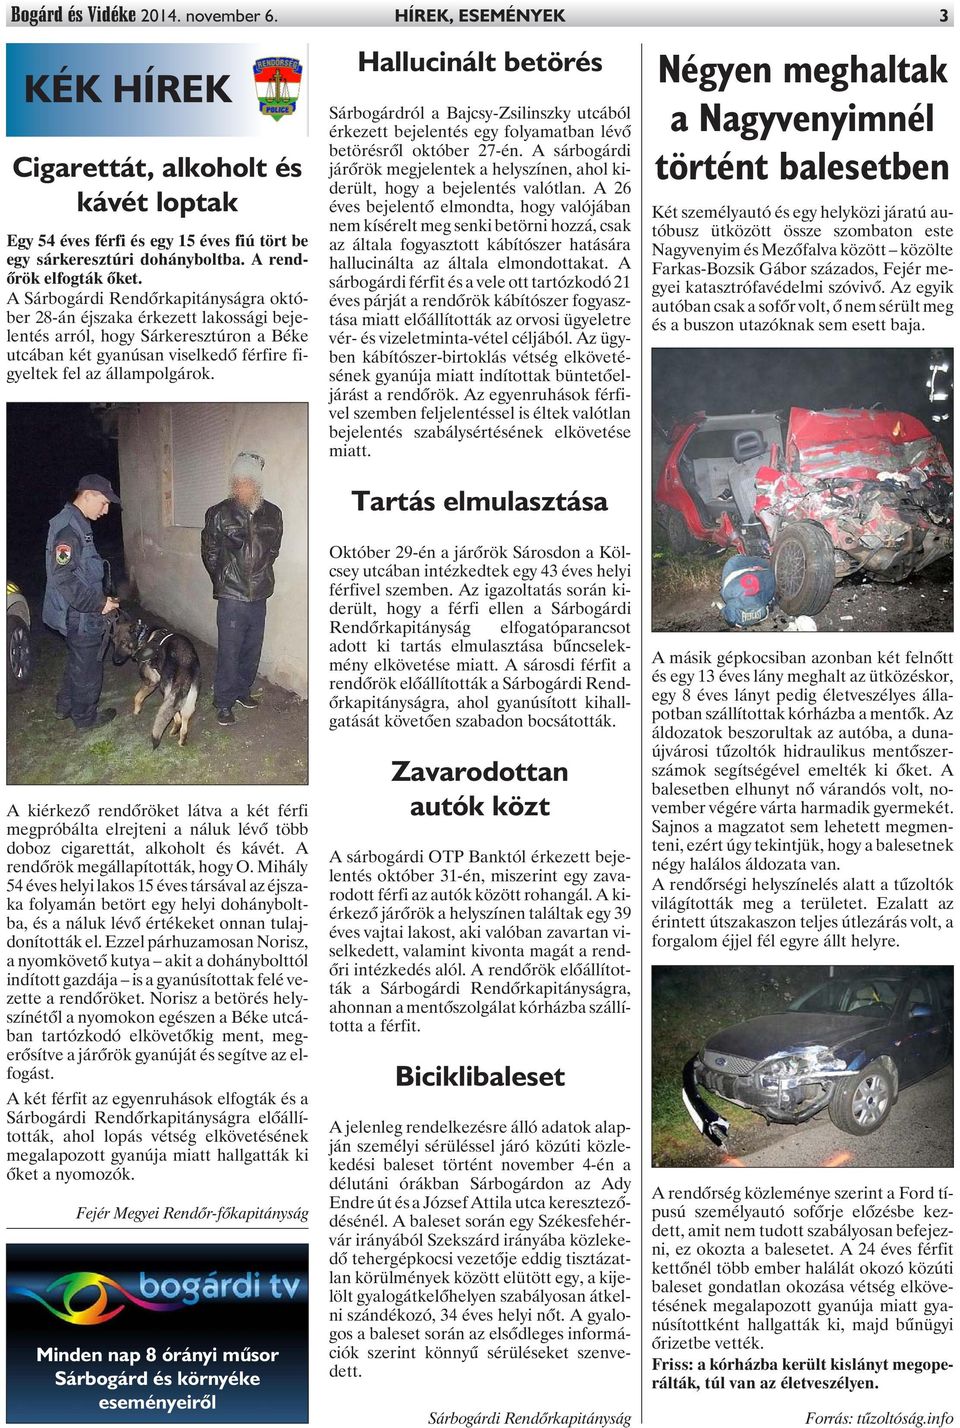 A Sárbogárdi Rendõrkapitányságra október 28-án éjszaka érkezett lakossági bejelentés arról, hogy Sárkeresztúron a Béke utcában két gyanúsan viselkedõ férfire figyeltek fel az állampolgárok.